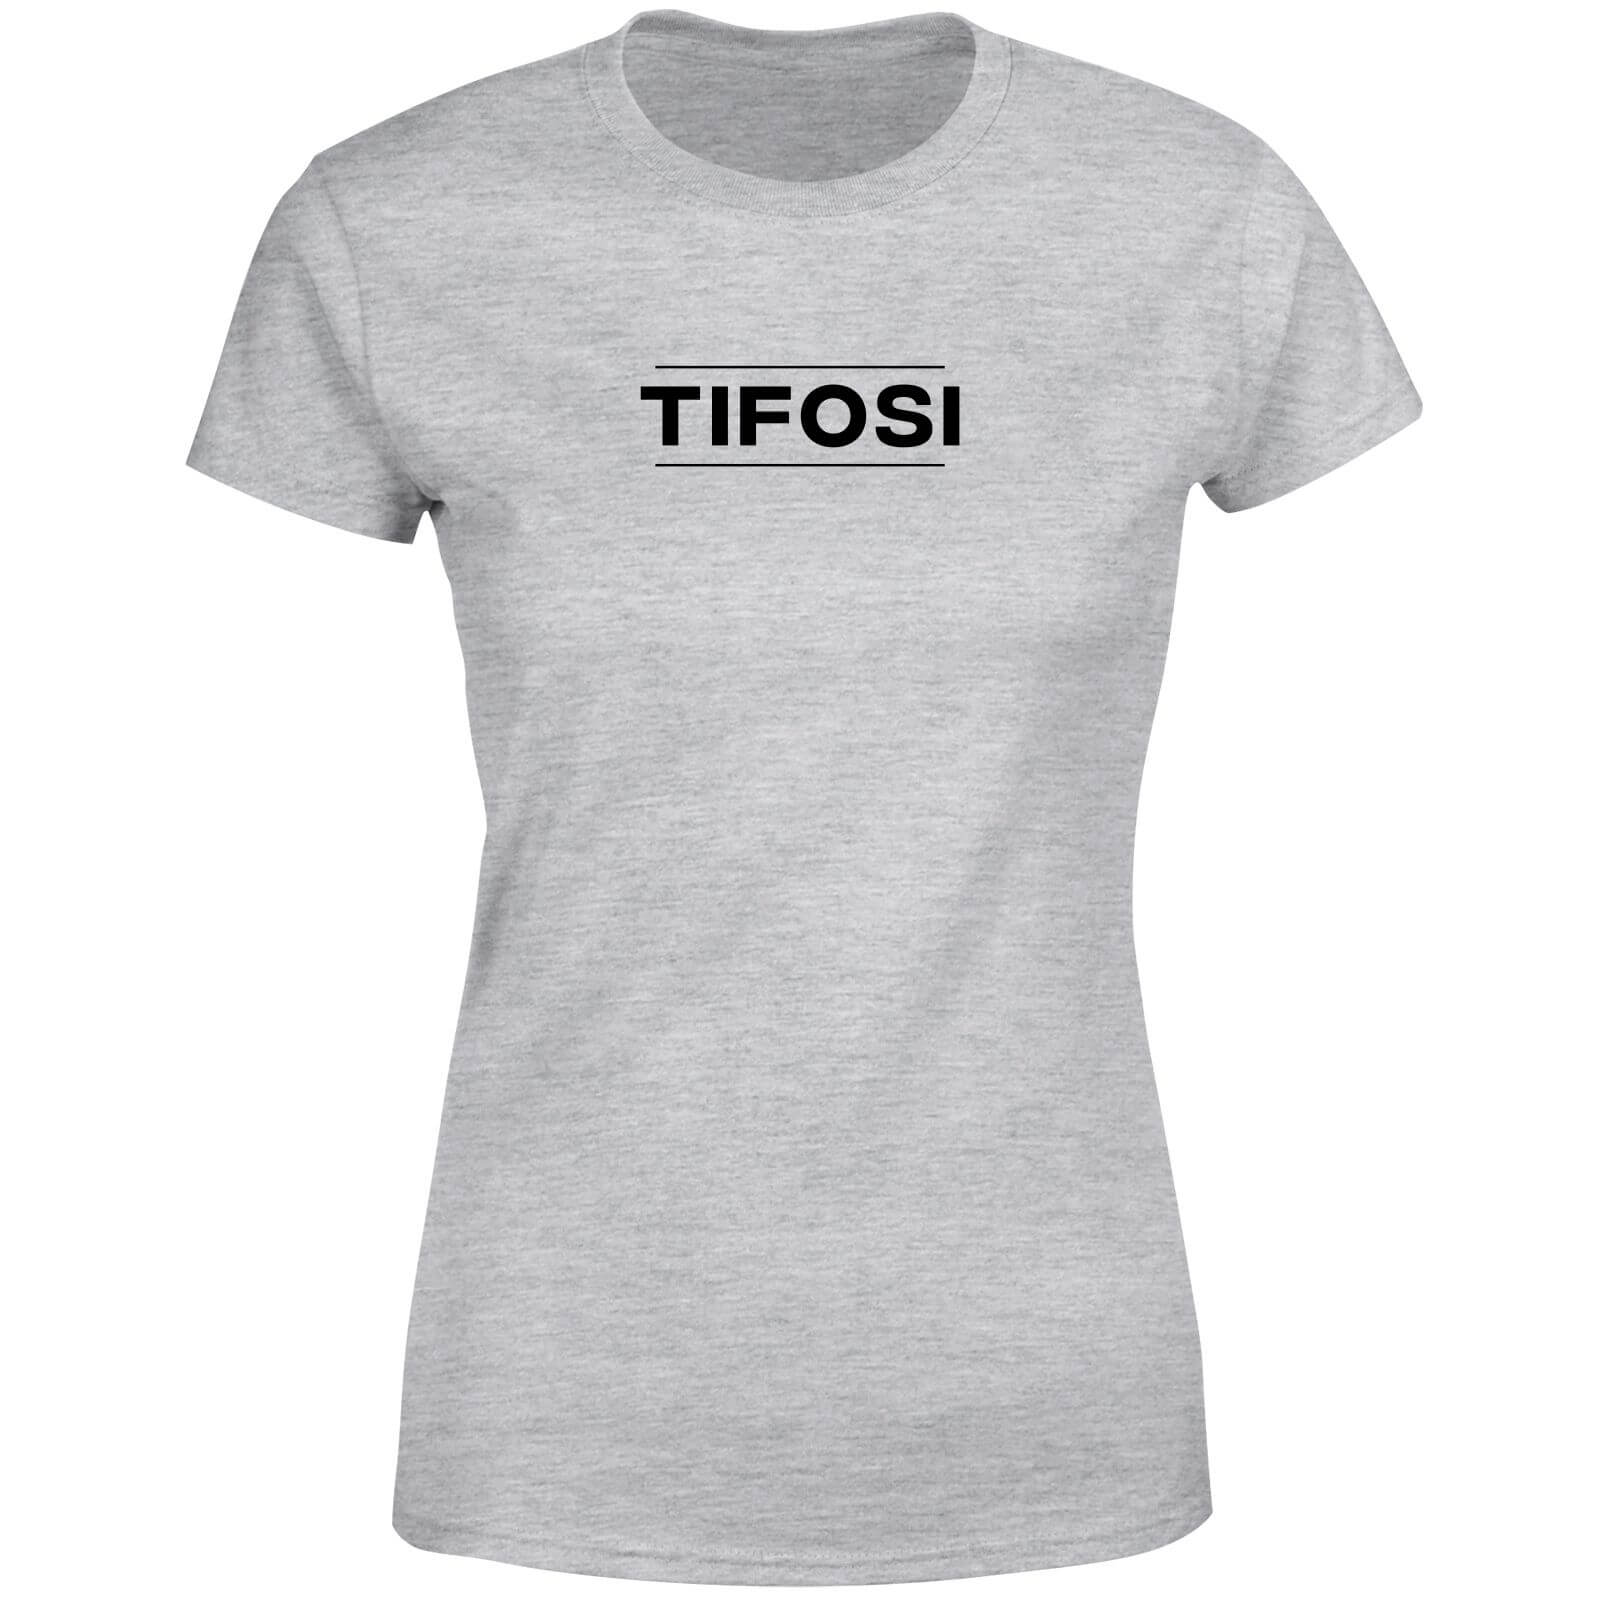 Tifosi Women's T-Shirt - Grey - XXL - Grey